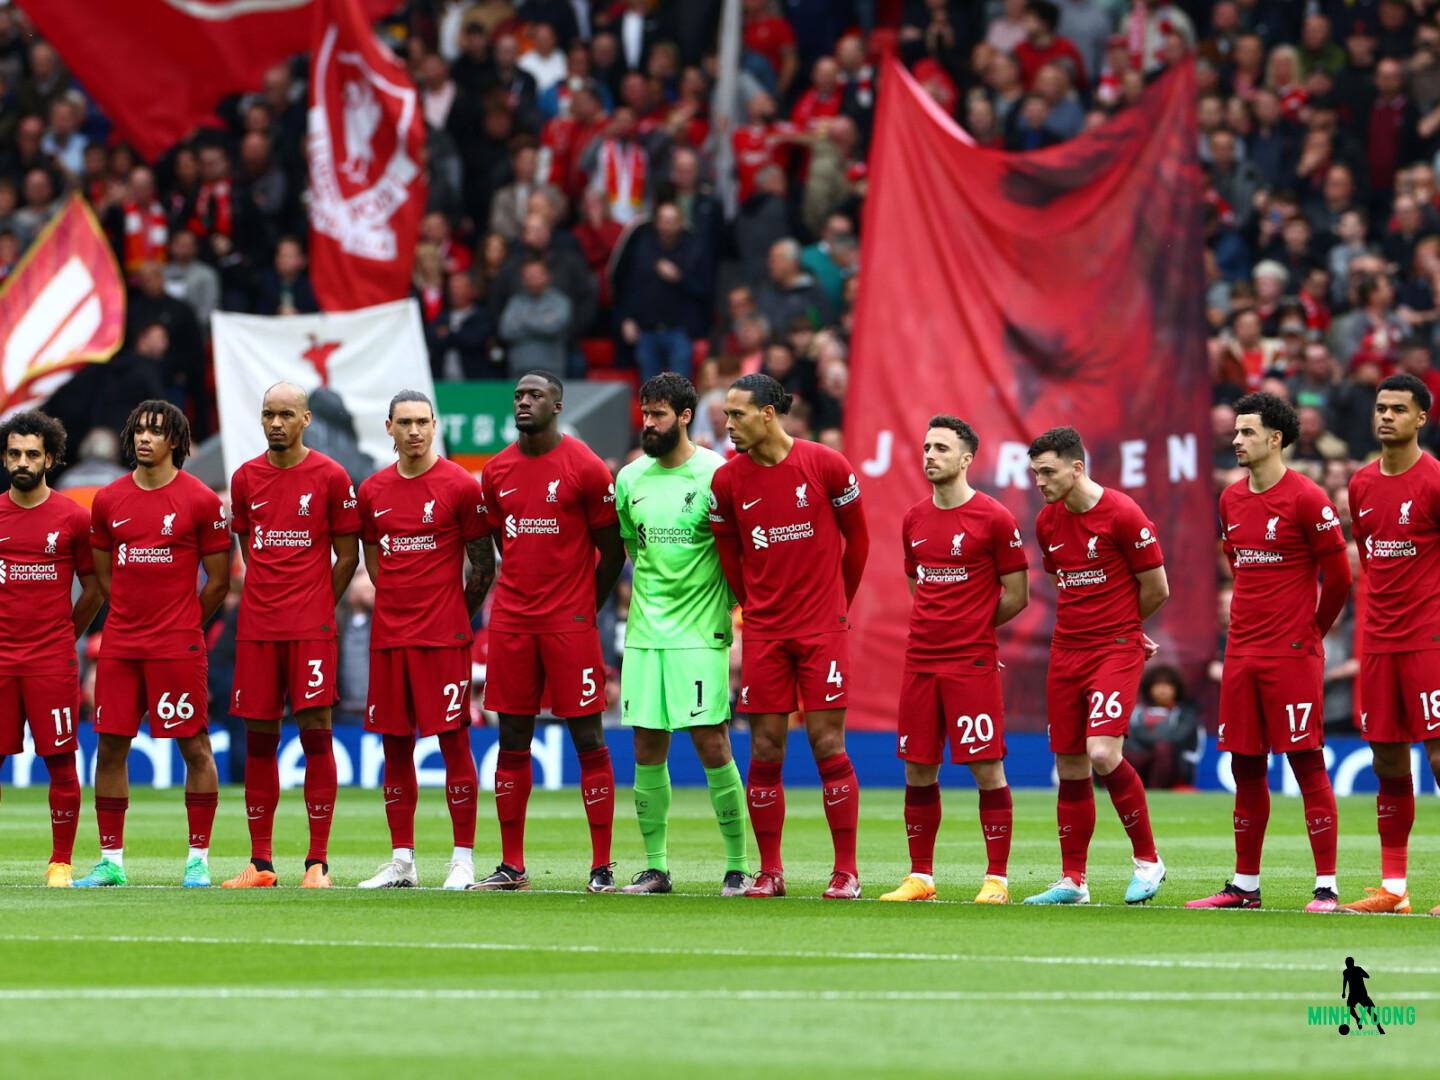 Lịch thi đấu của Liverpool tại Ngoại hạng Anh sẽ có giai đoạn nào khó khăn?